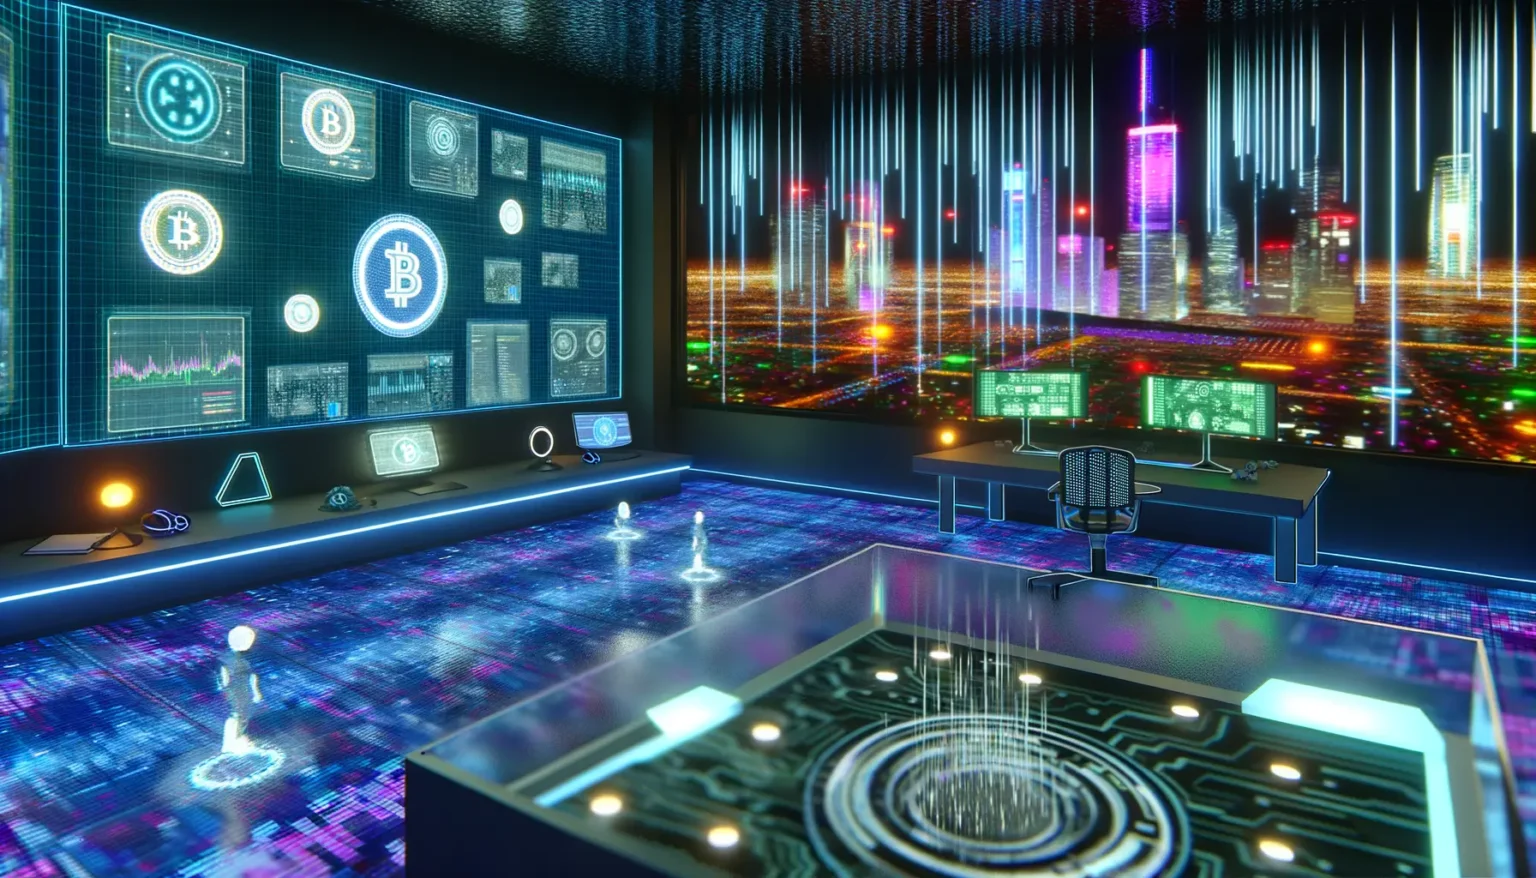 Futuristisches Innenraumdesign eines Kontrollraums mit beleuchteten digitalen Anzeigen von Kryptowährungssymbolen wie Bitcoin an der Wand, holographischen Projektionen auf dem Boden, einer beleuchteten Stadtansicht im Hintergrund und einem modernen Büroarbeitsplatz.